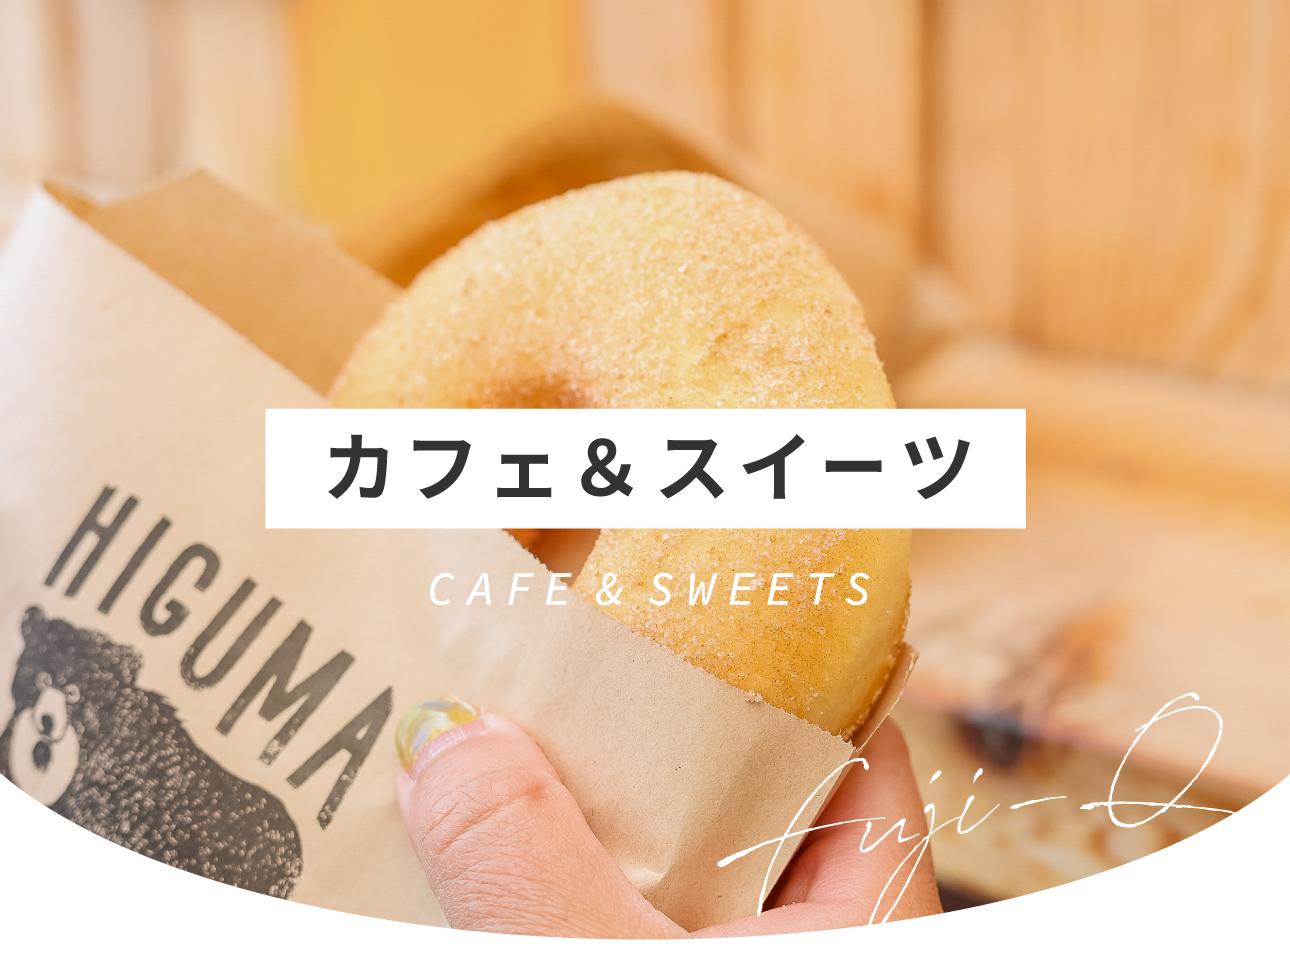 富士急高原美食 - 咖啡厅和甜点